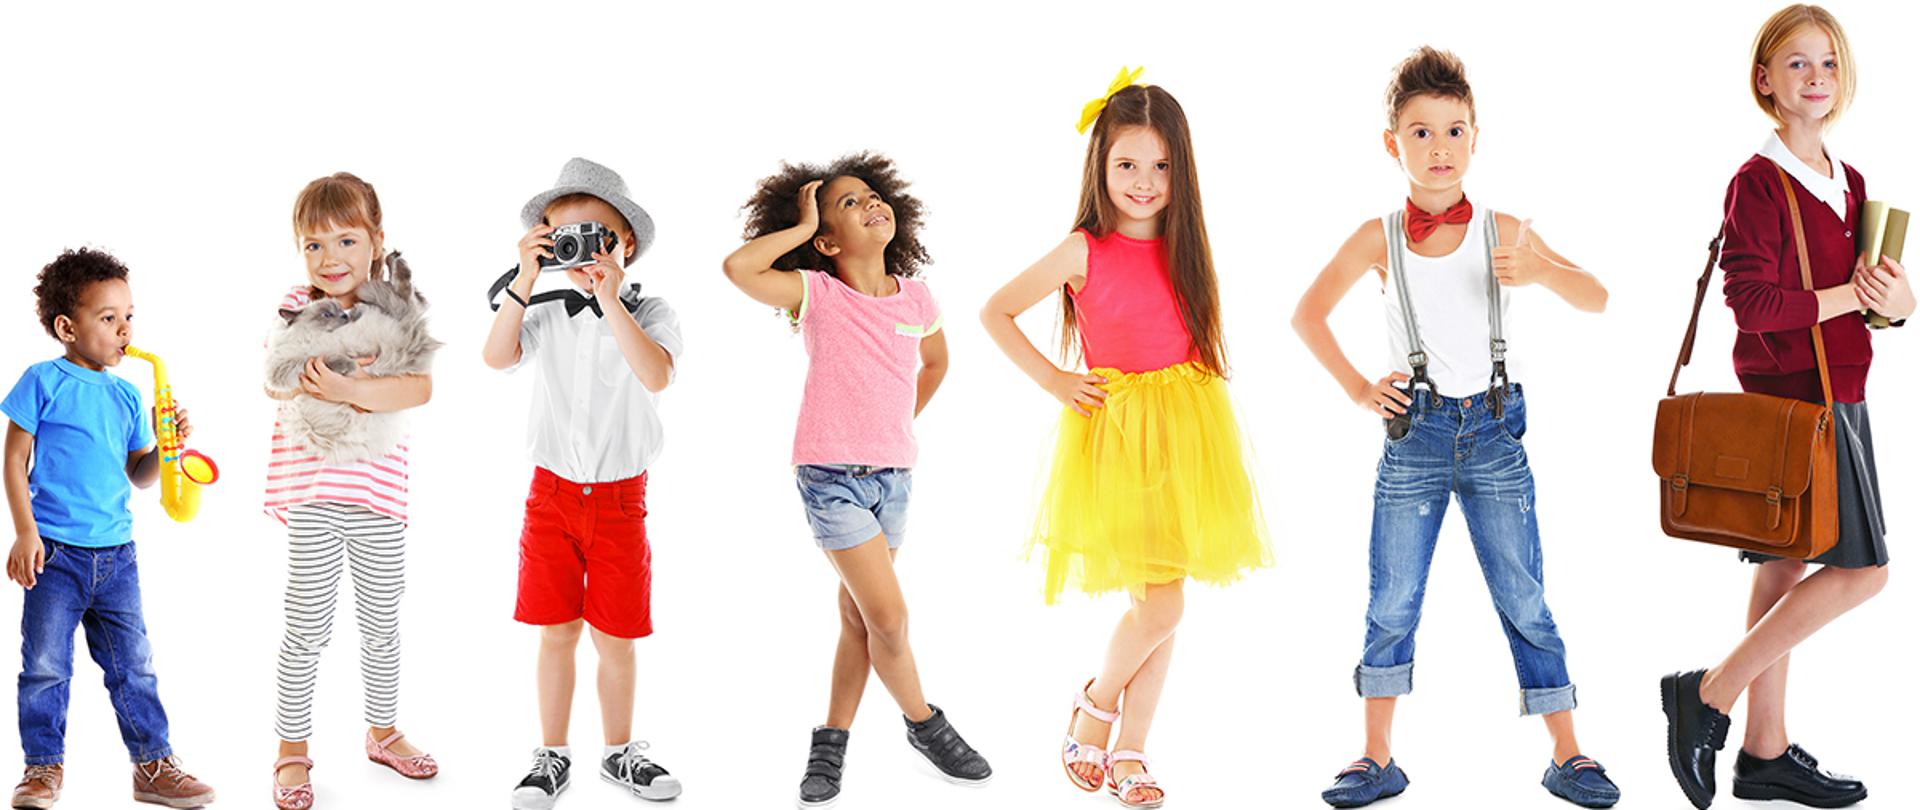 Zdjęcie przedstawia dzieci na białym tle w różnym wieku, ubrane w kolorowe ubrania.